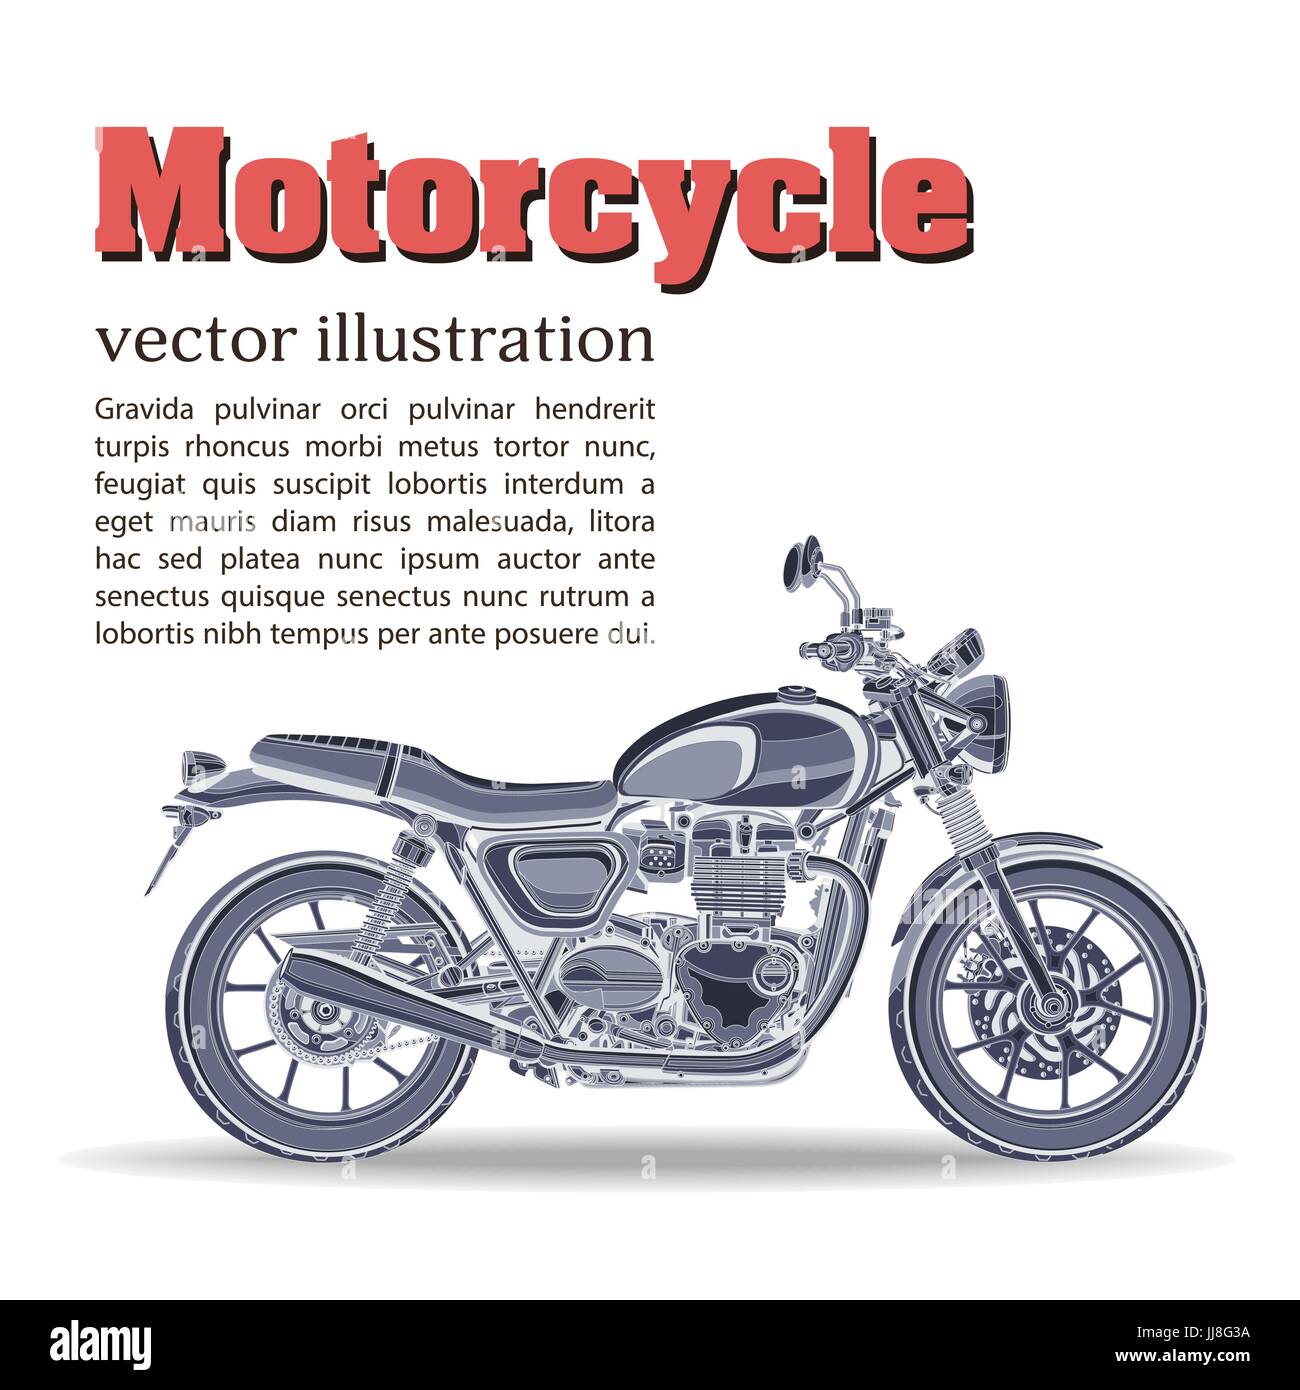 Diseño de envoltorio para motocicletas. concepto: vector de stock